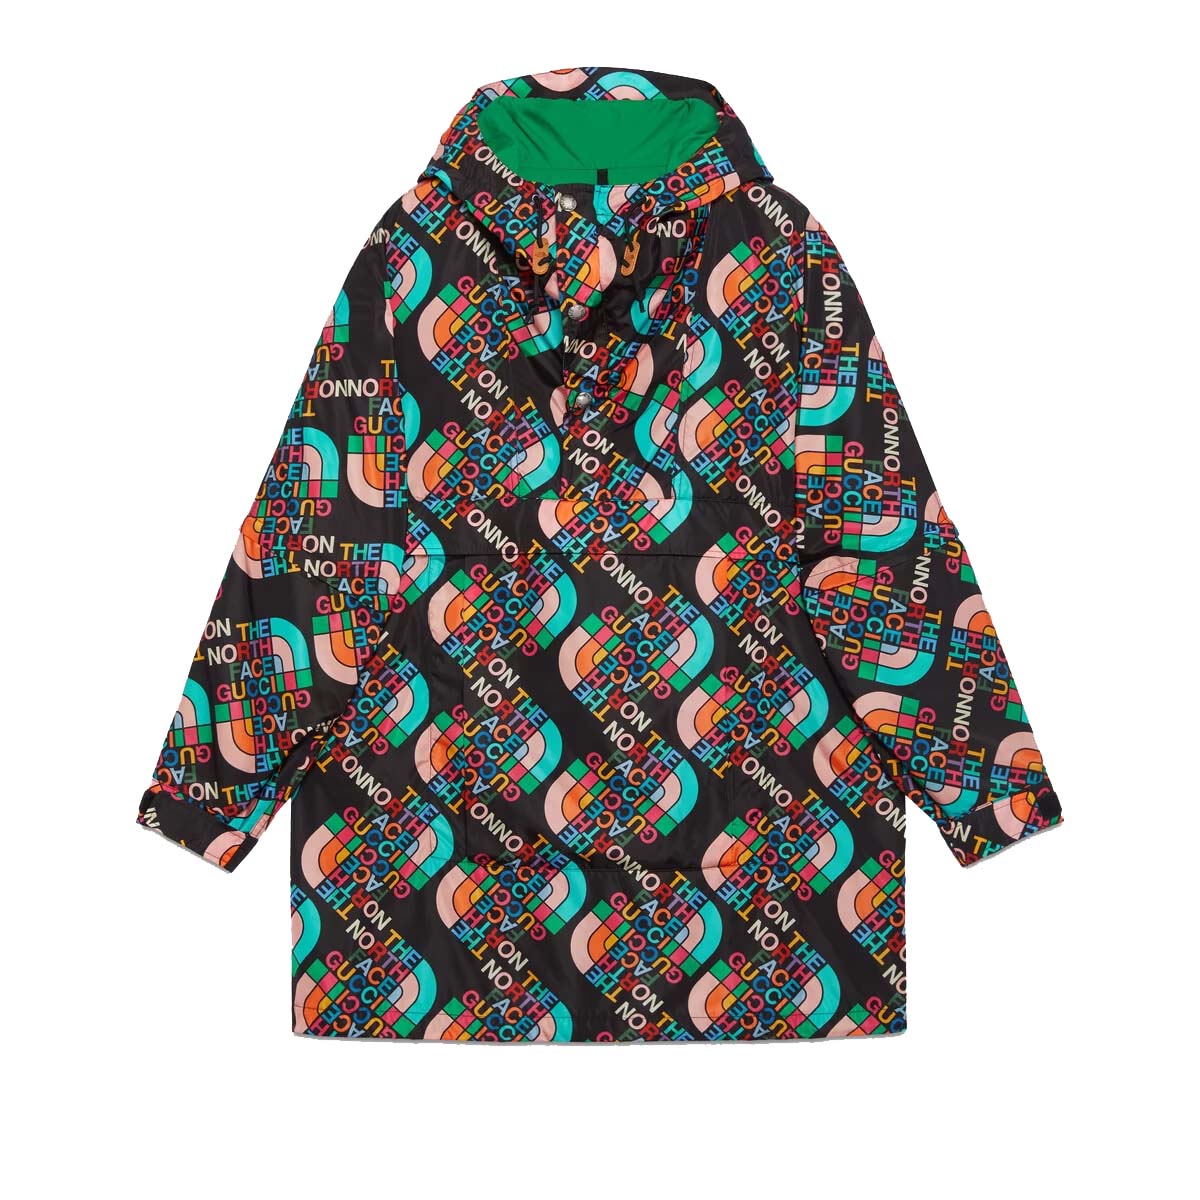 Gucci x The North Face Nylon Coat Multicolor/Black - FW22 - US